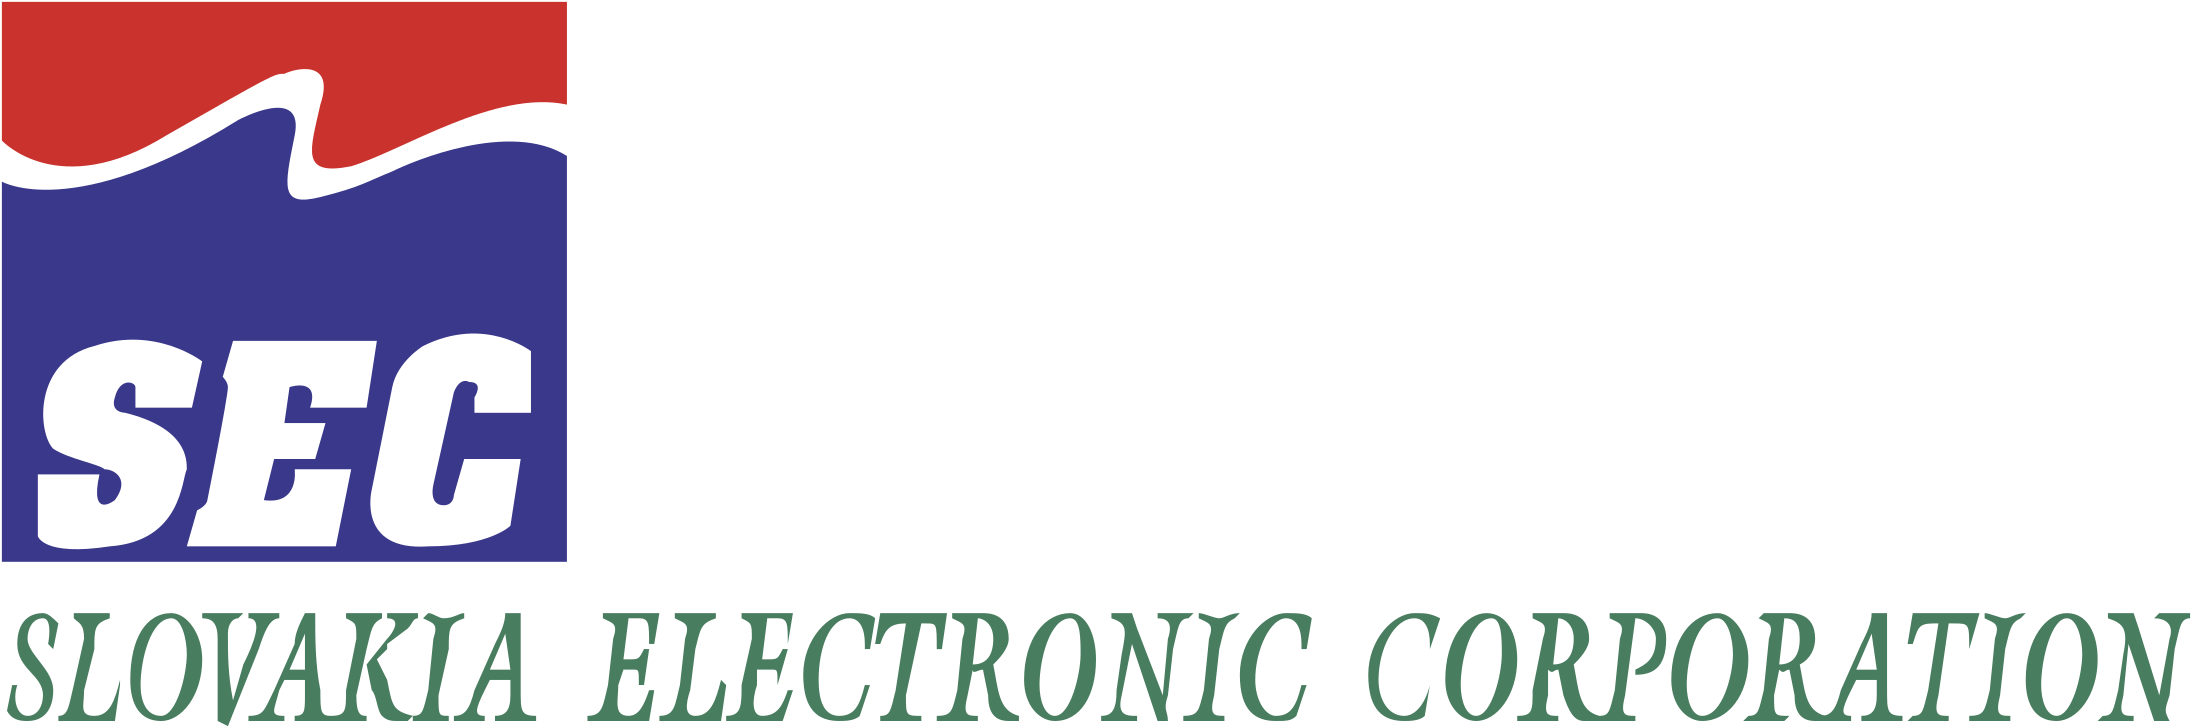 Sec Logo Png Transparent - Logo (2400x2400), Png Download